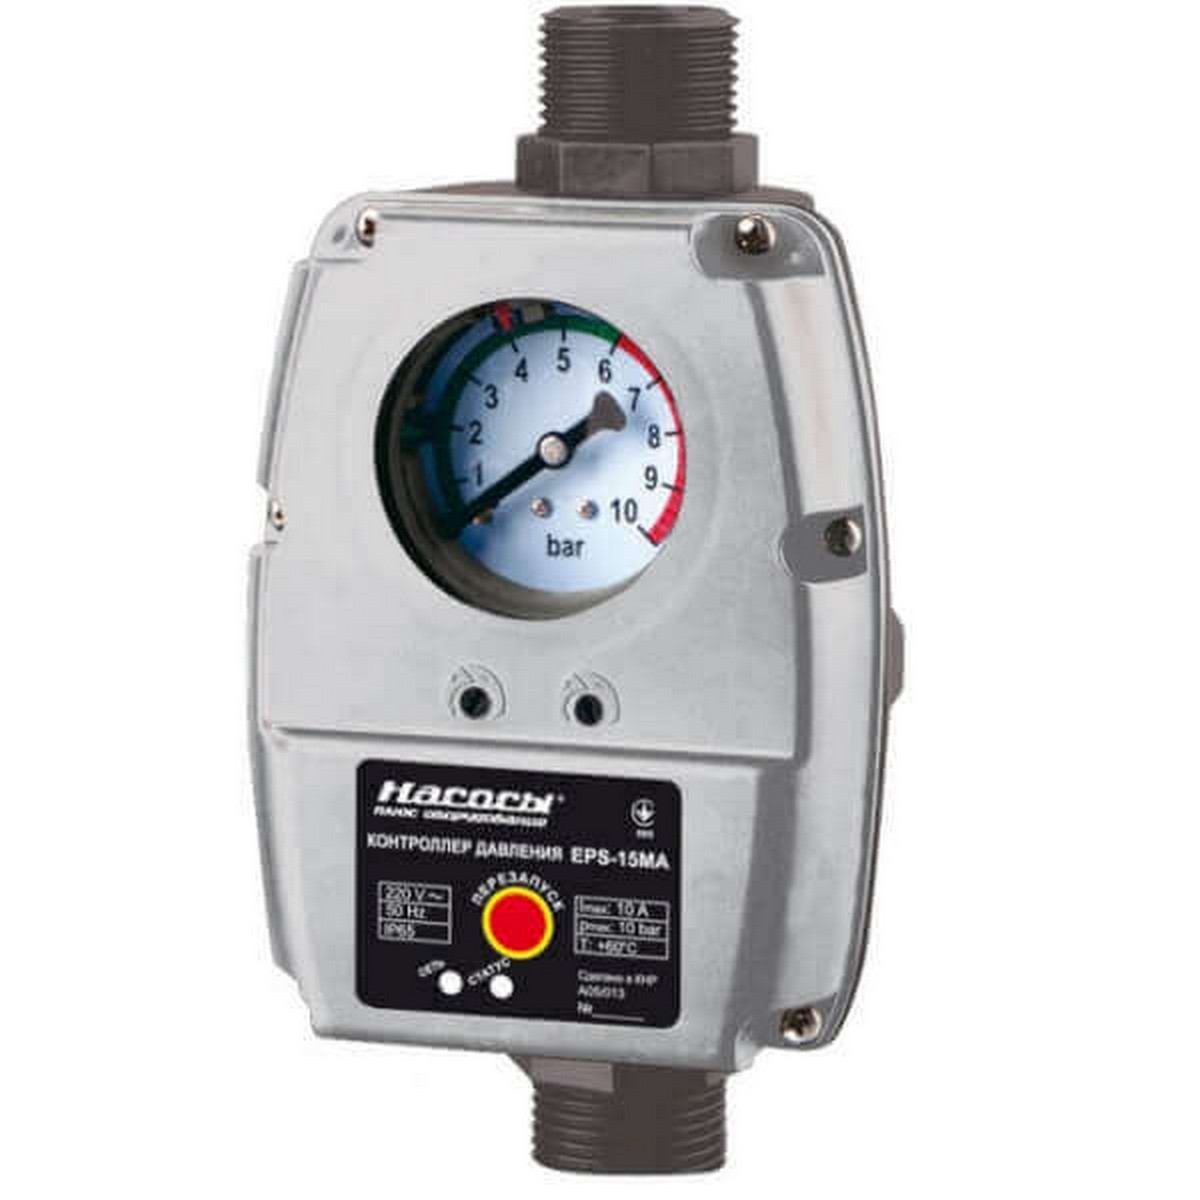 Автоматика водоснабжения (контроллер давления) Насосы+ EPS 15MA